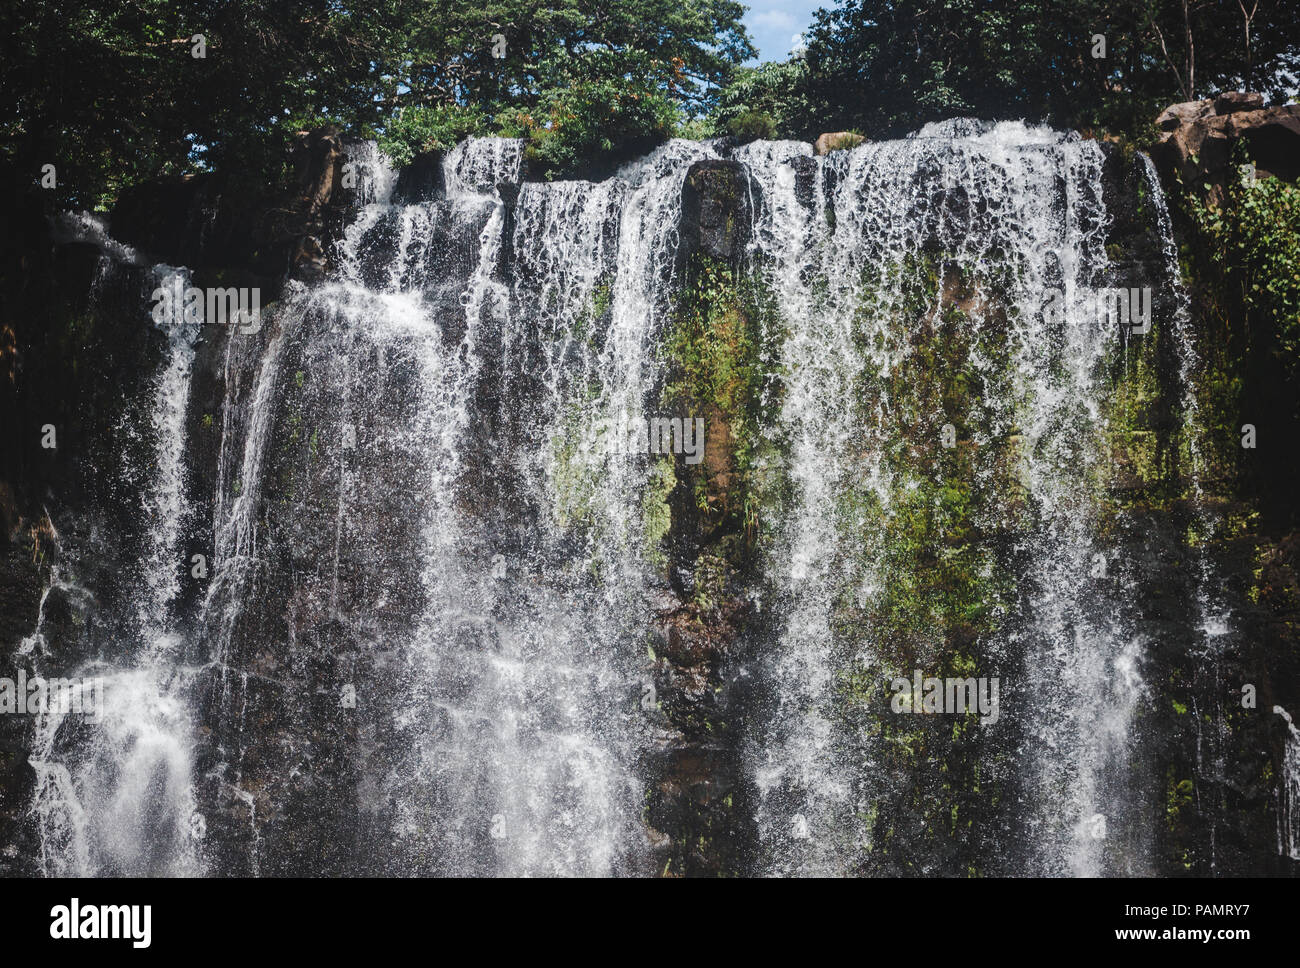 Llanos de Cortez en cascade, Escazu Costa Rica avec de lourdes de l'eau Débit d'eau pendant la saison des pluies Banque D'Images